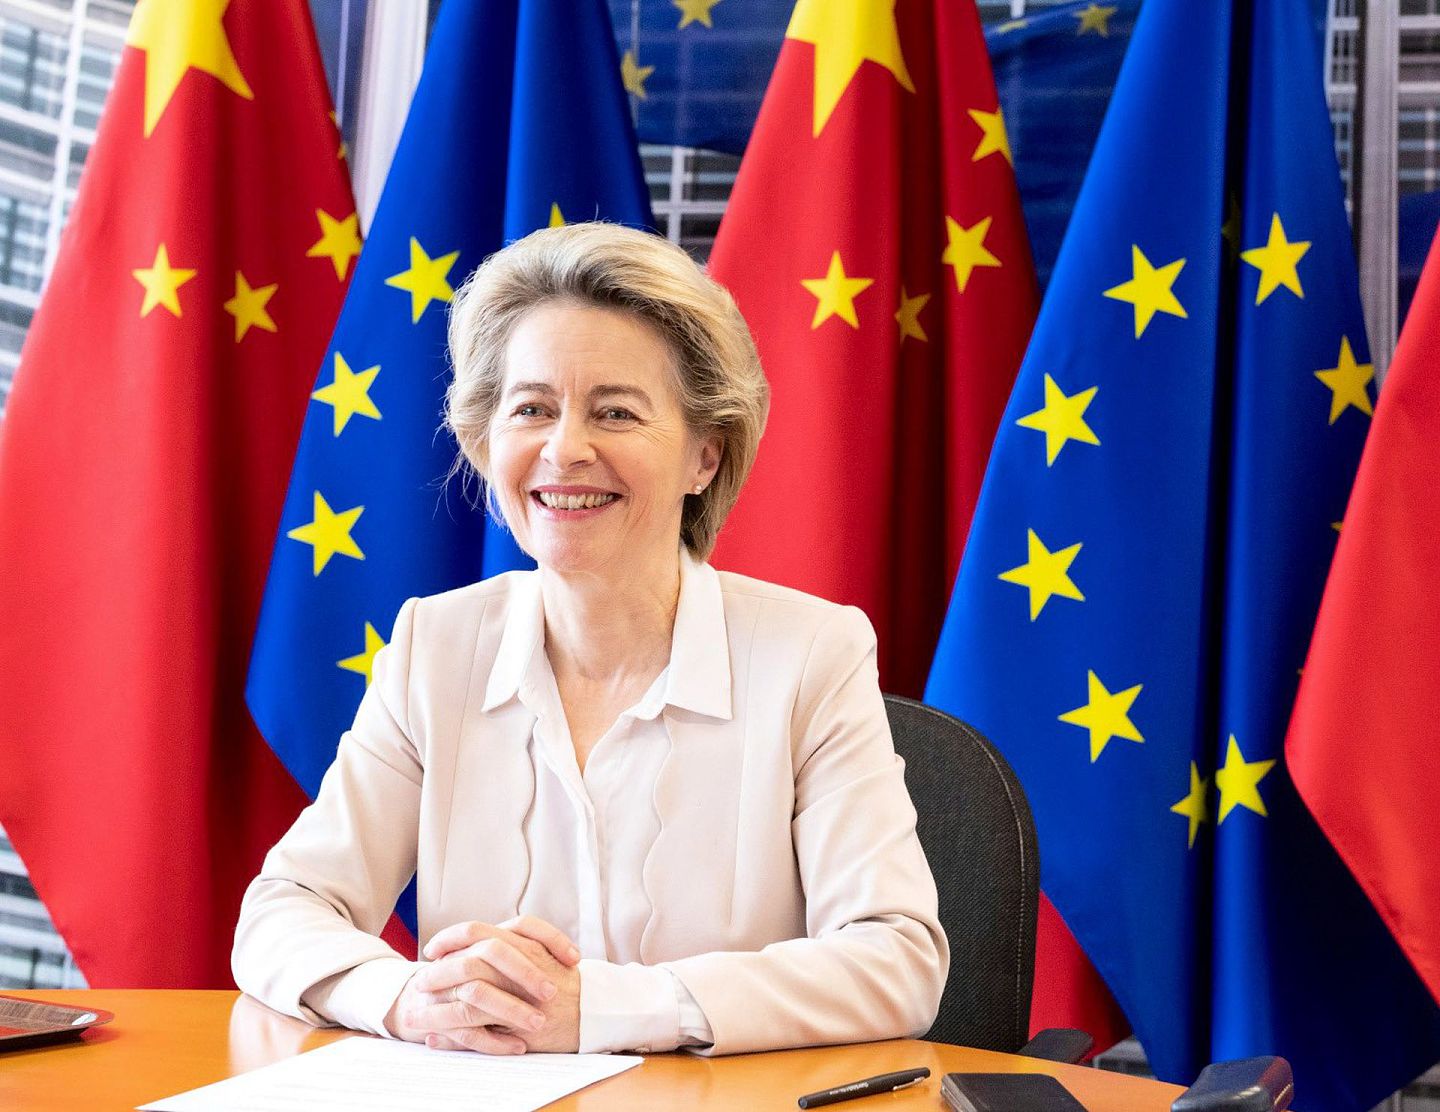 中国国家主席习近平12月30日晚在北京同德国总理默克尔（Angela Merkel）、法国总统马克龙（Emmanuel Macron）、欧洲理事会主席米歇尔、欧盟委员会主席冯德莱恩举行视频会晤。冯德莱恩在自己的推特（Twitter）上发布了会晤照片，她显得十分开心。（Twitter@Ursula von der Leyen）